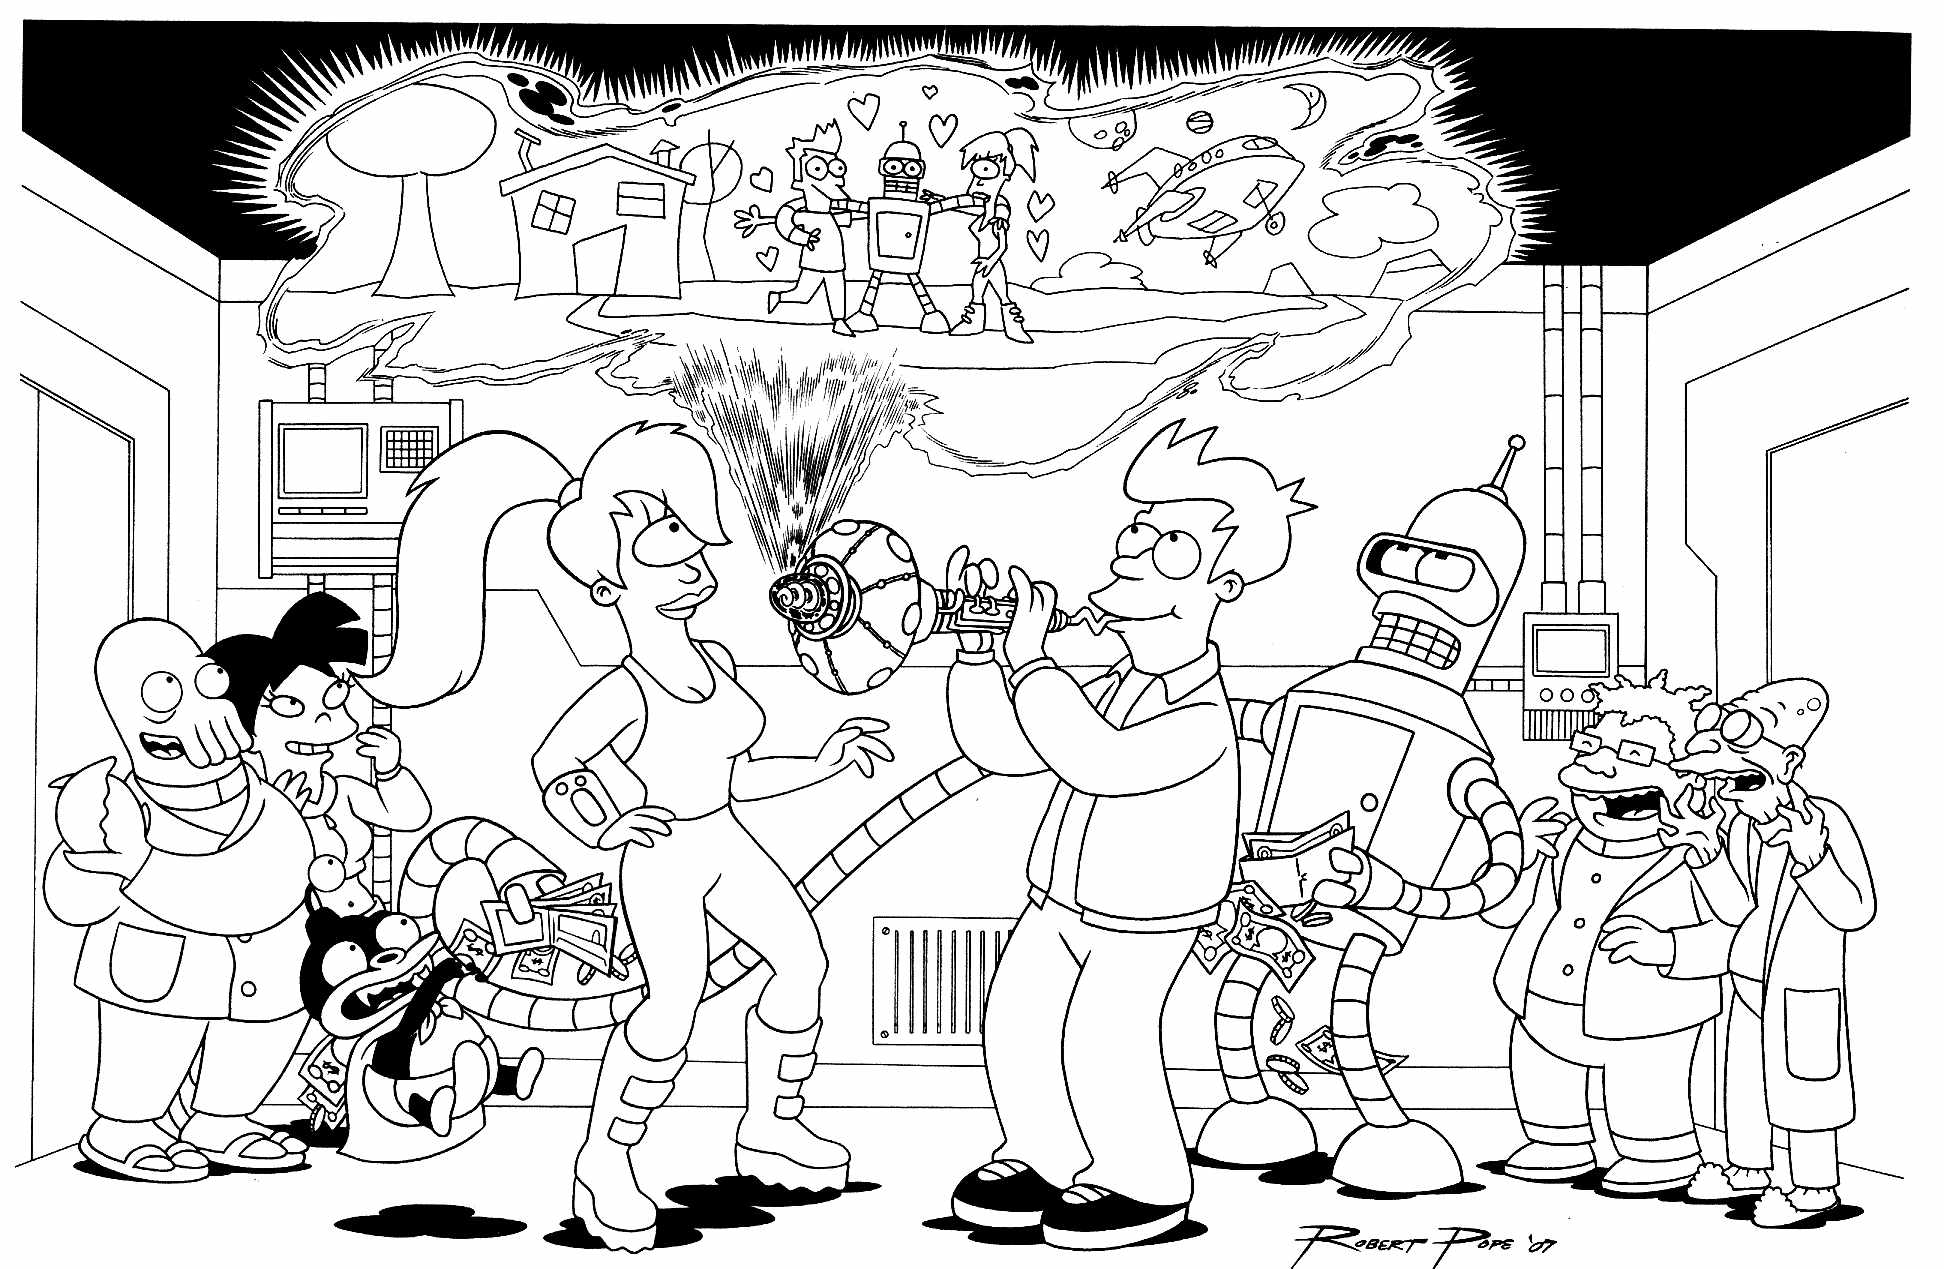 Les principaux personnages de Futurama réunis dans un coloriage